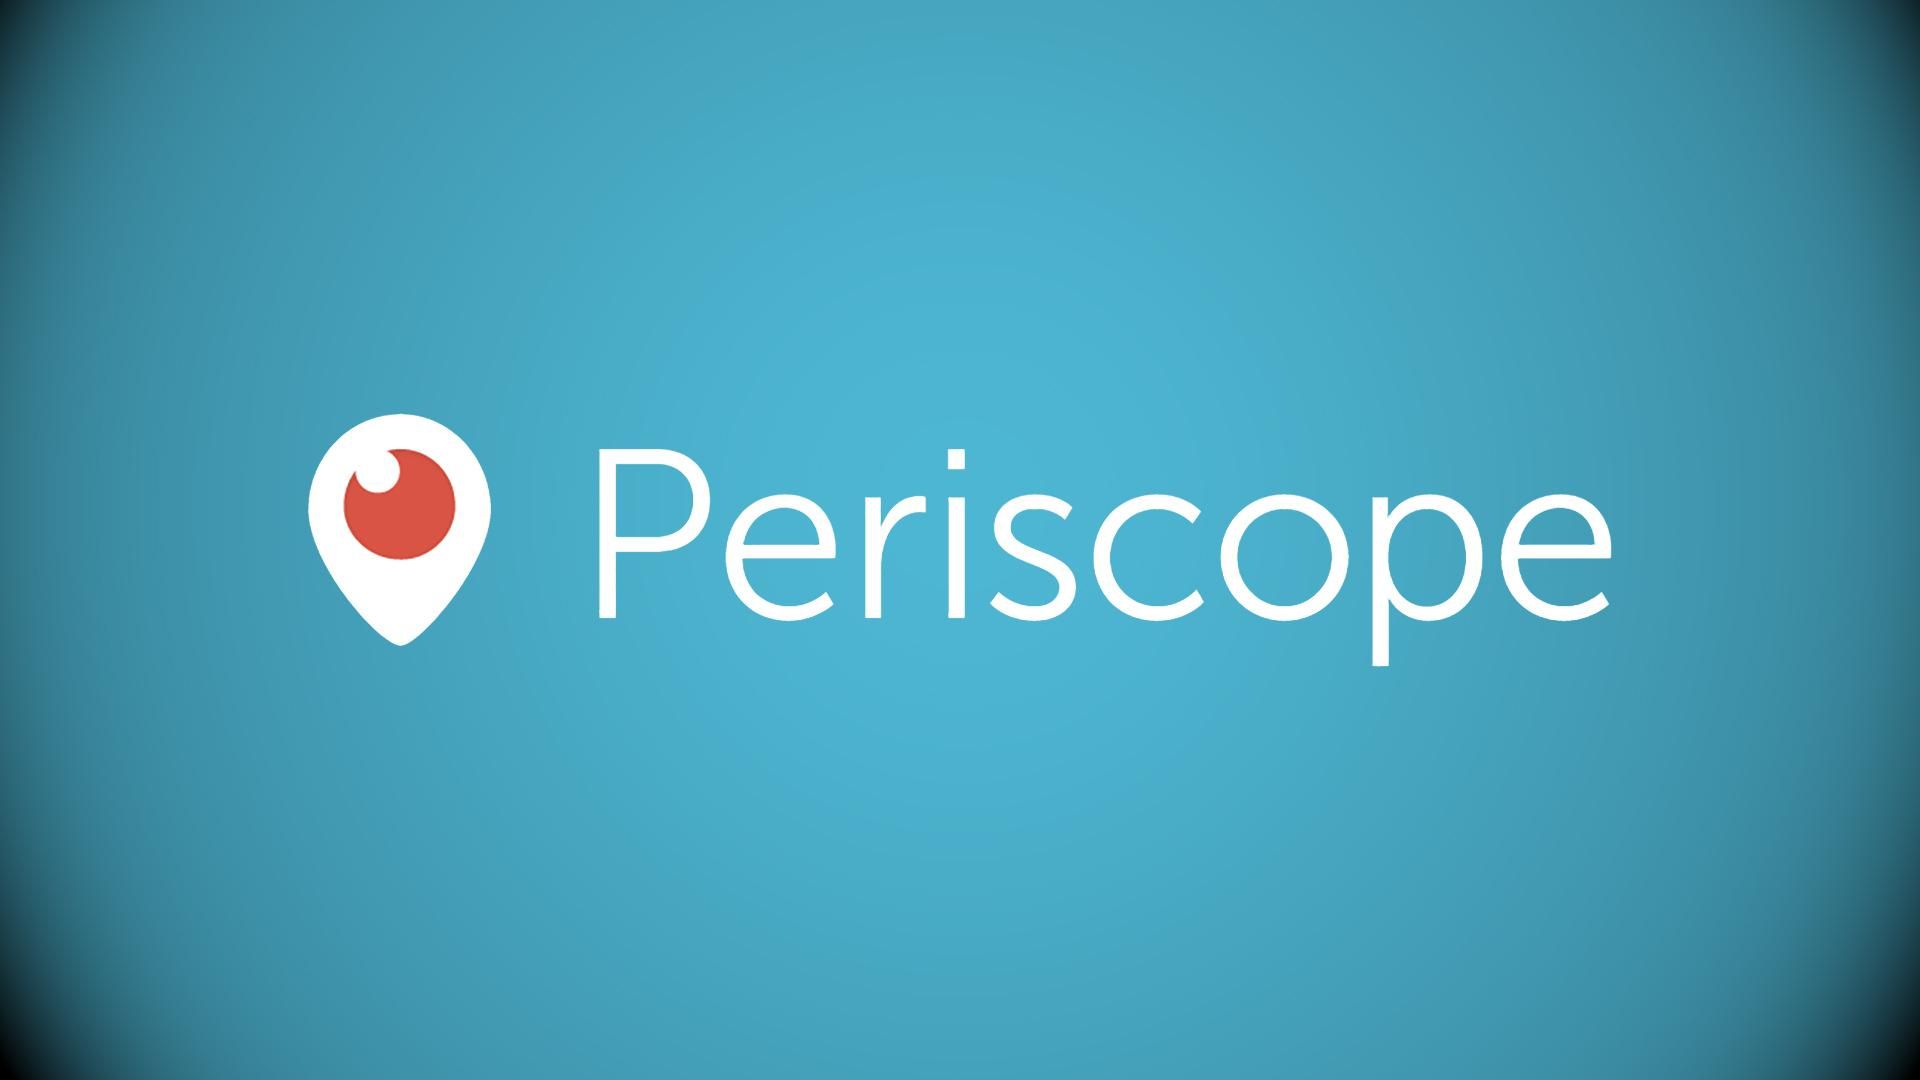 Twitter закрывает Periscope и займется развитием своих видеотрансляций